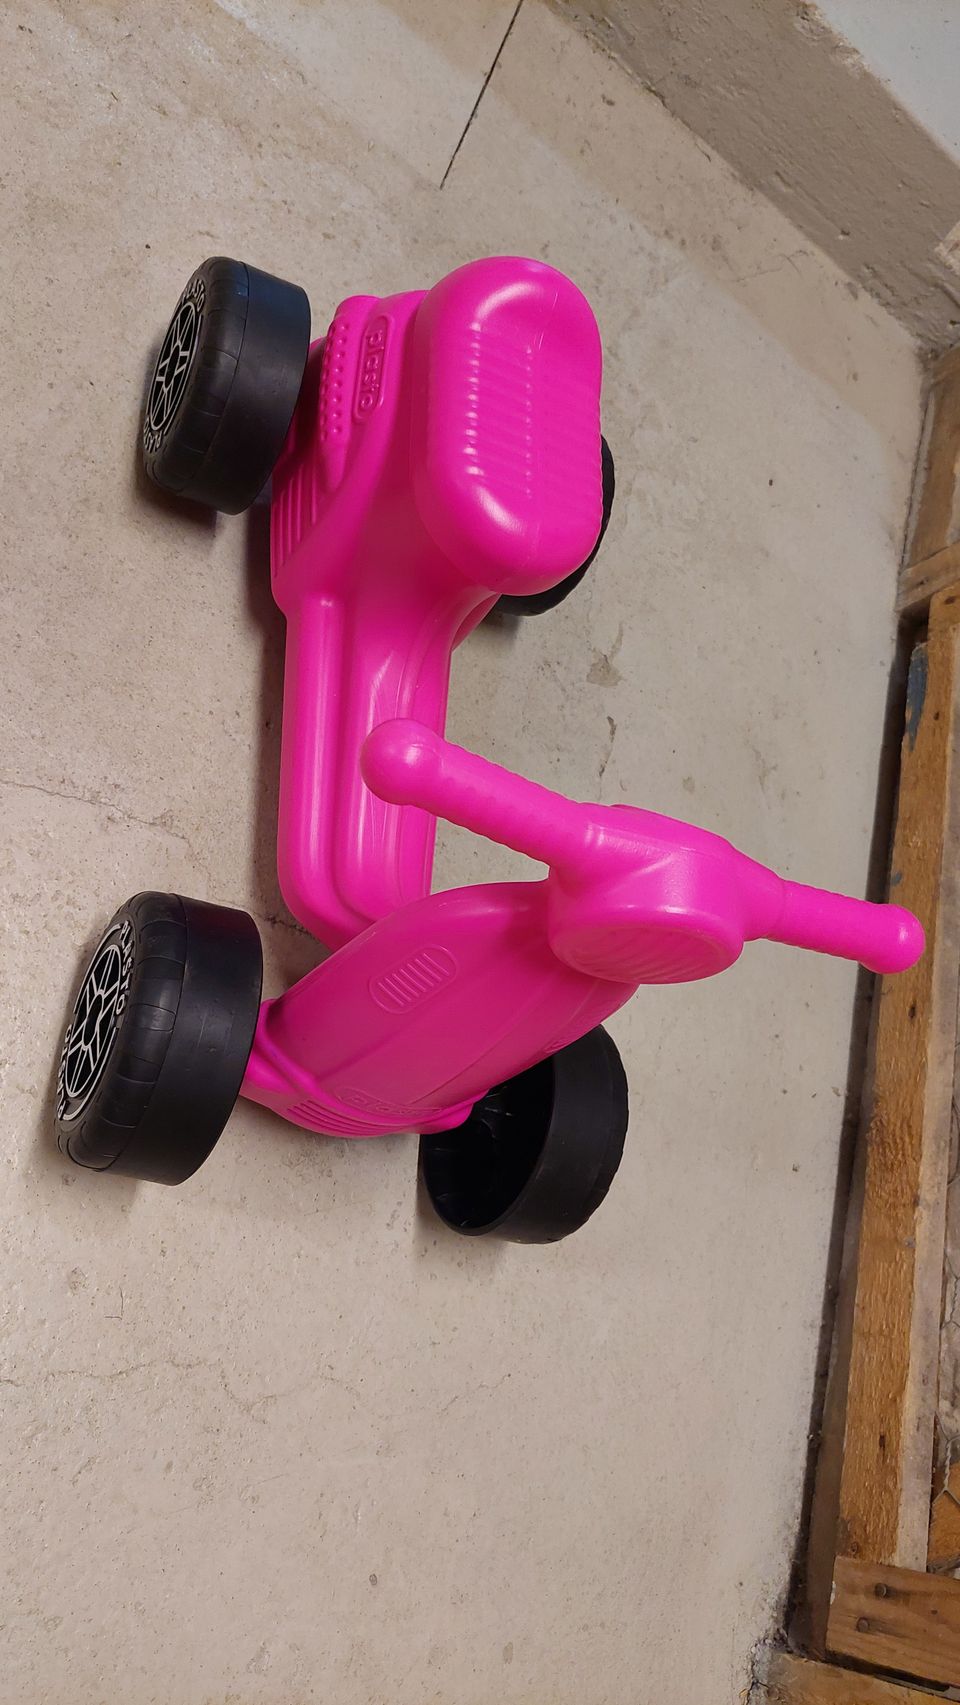 Plasto pinkki skootteri